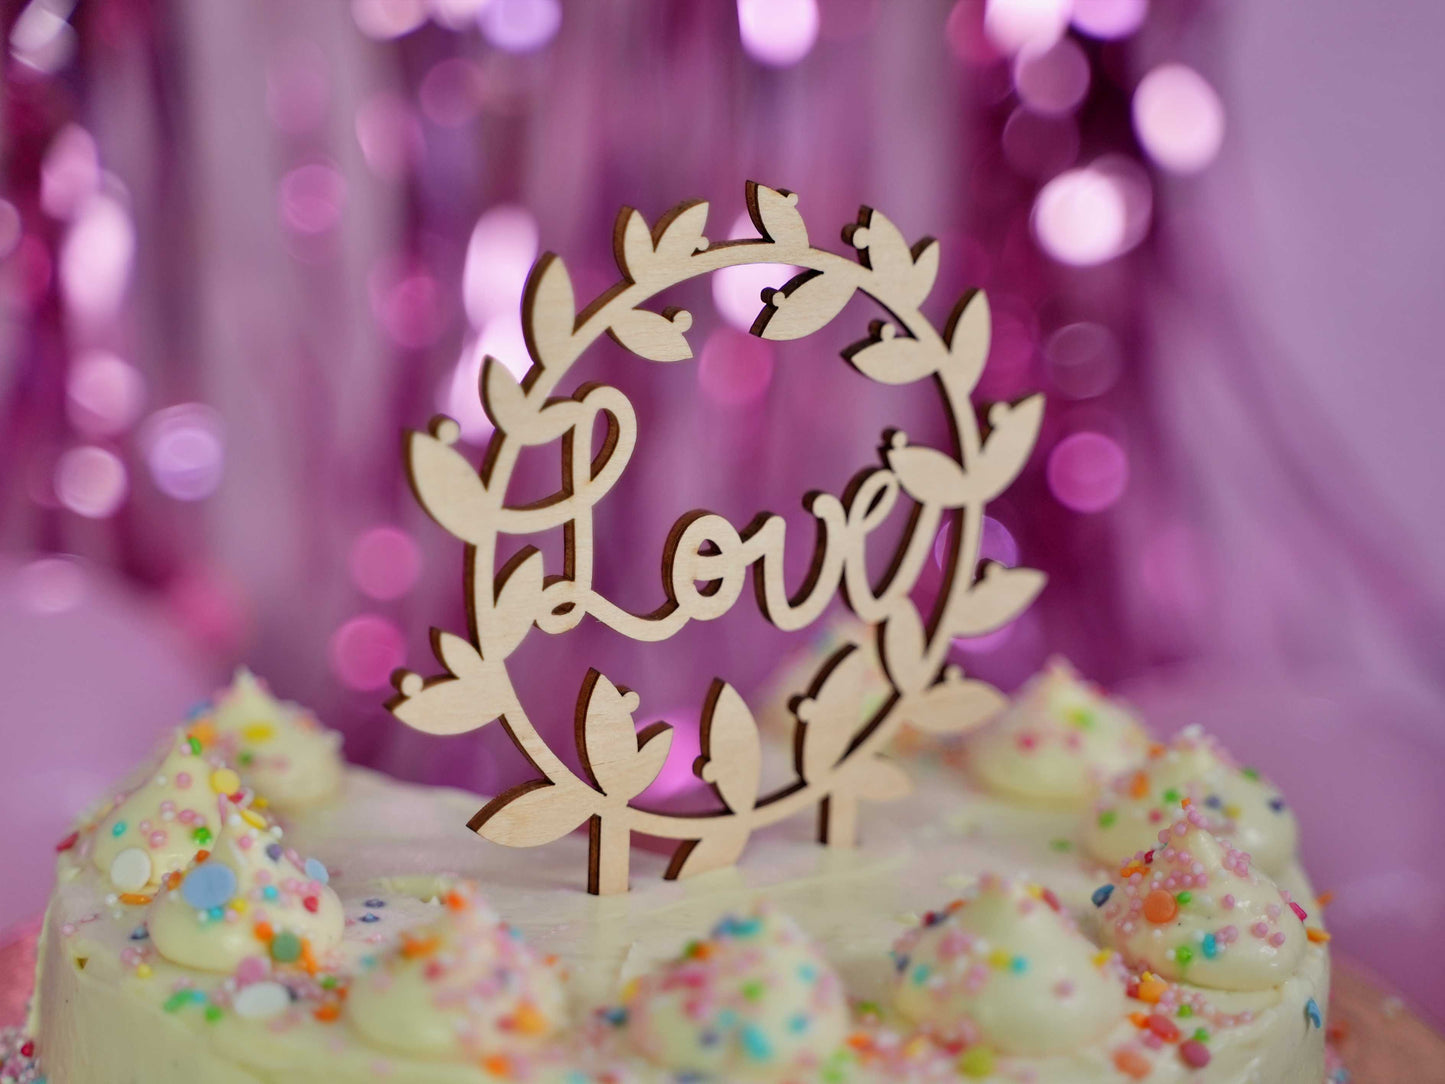 Kikis Cake Topper - Love